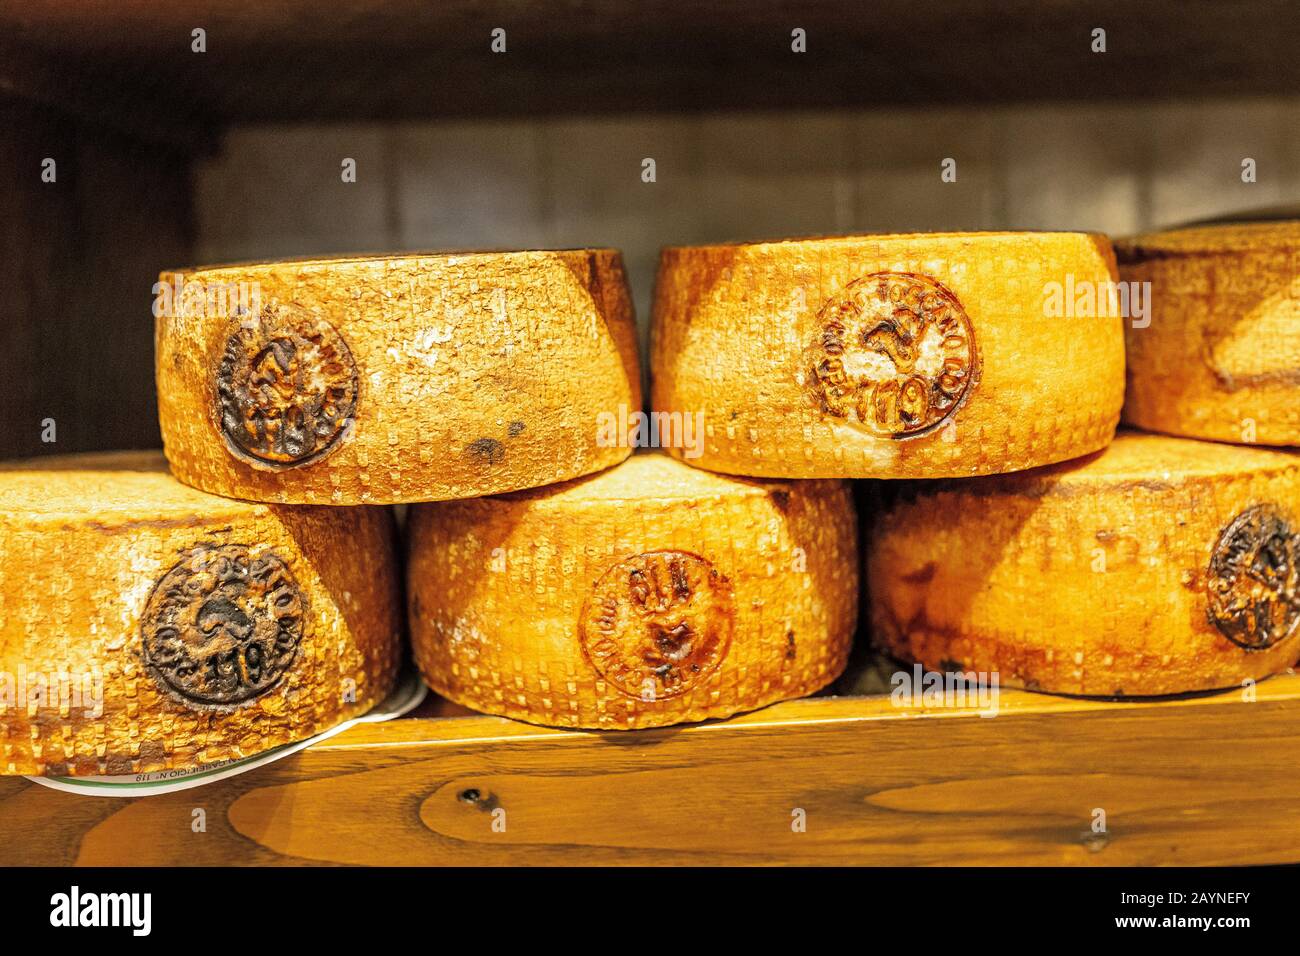 17 OCTOBRE 2018, PIENZA, ITALIE : fromage Pecorino typique à vendre sur le marché local Banque D'Images